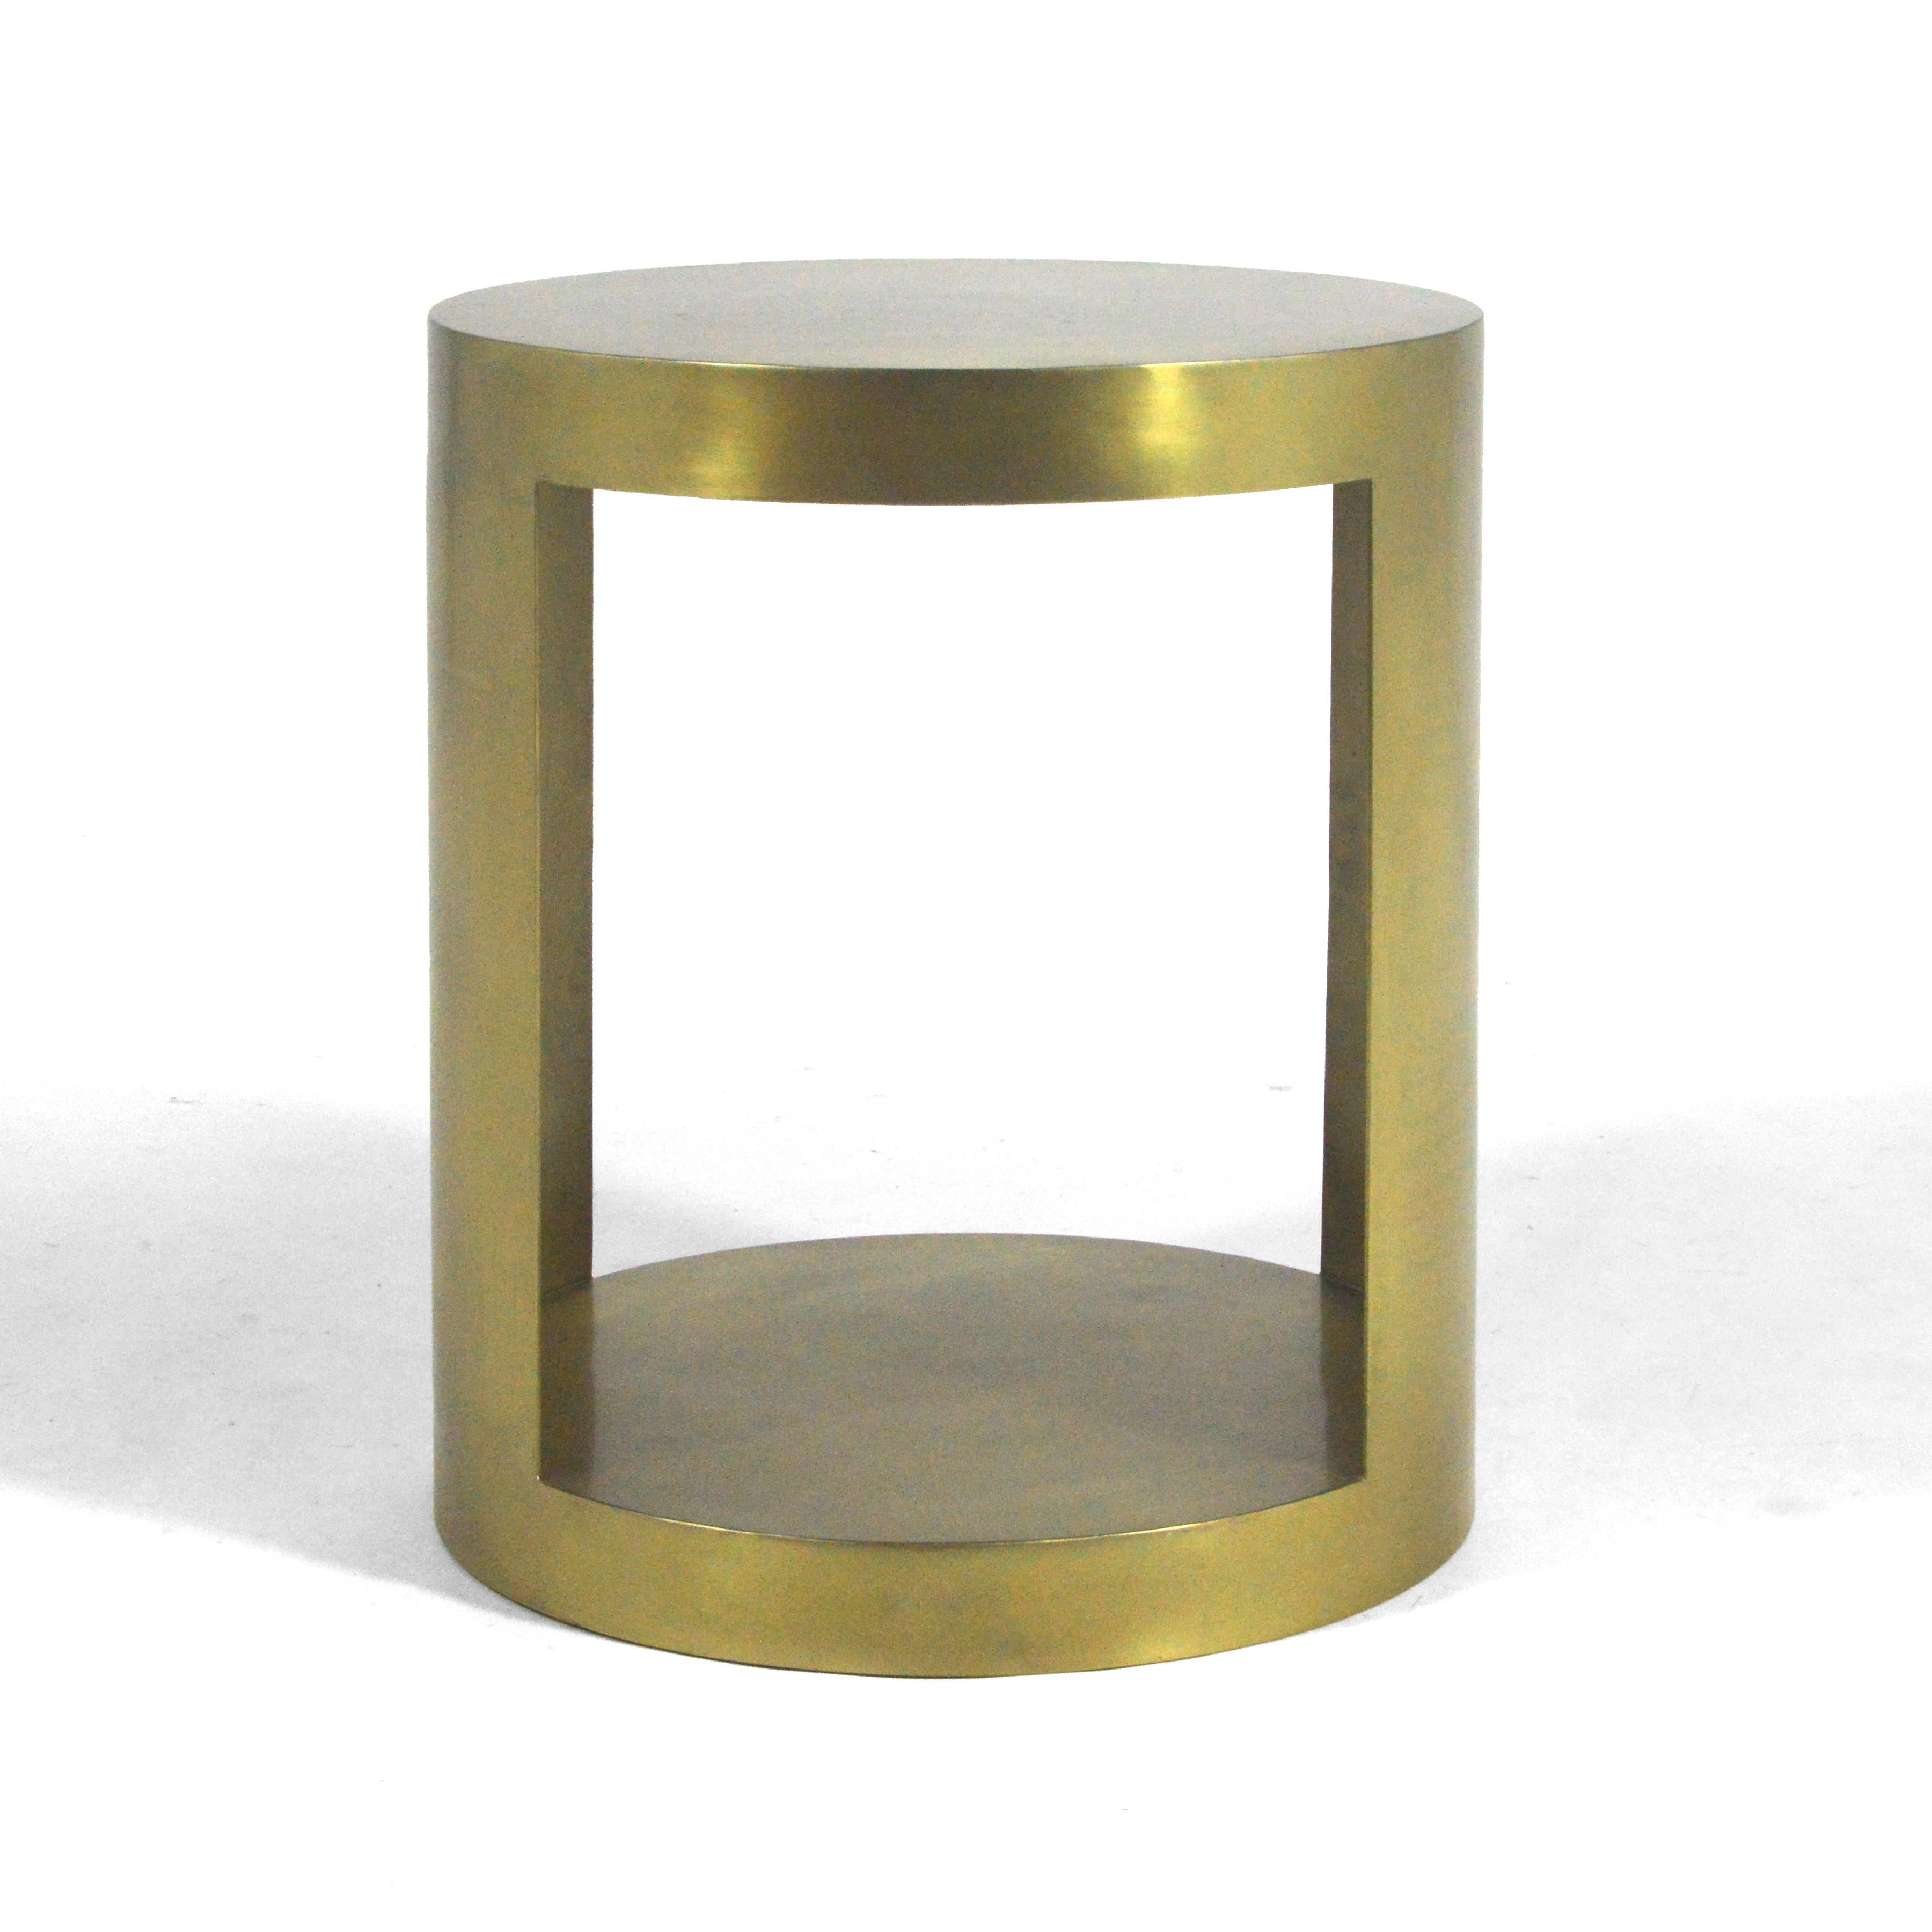 Cette belle table d'appoint en acier, fabriquée sur mesure avec une finition couleur bronze, présente un magnifique design minimaliste et une excellente qualité de fabrication.